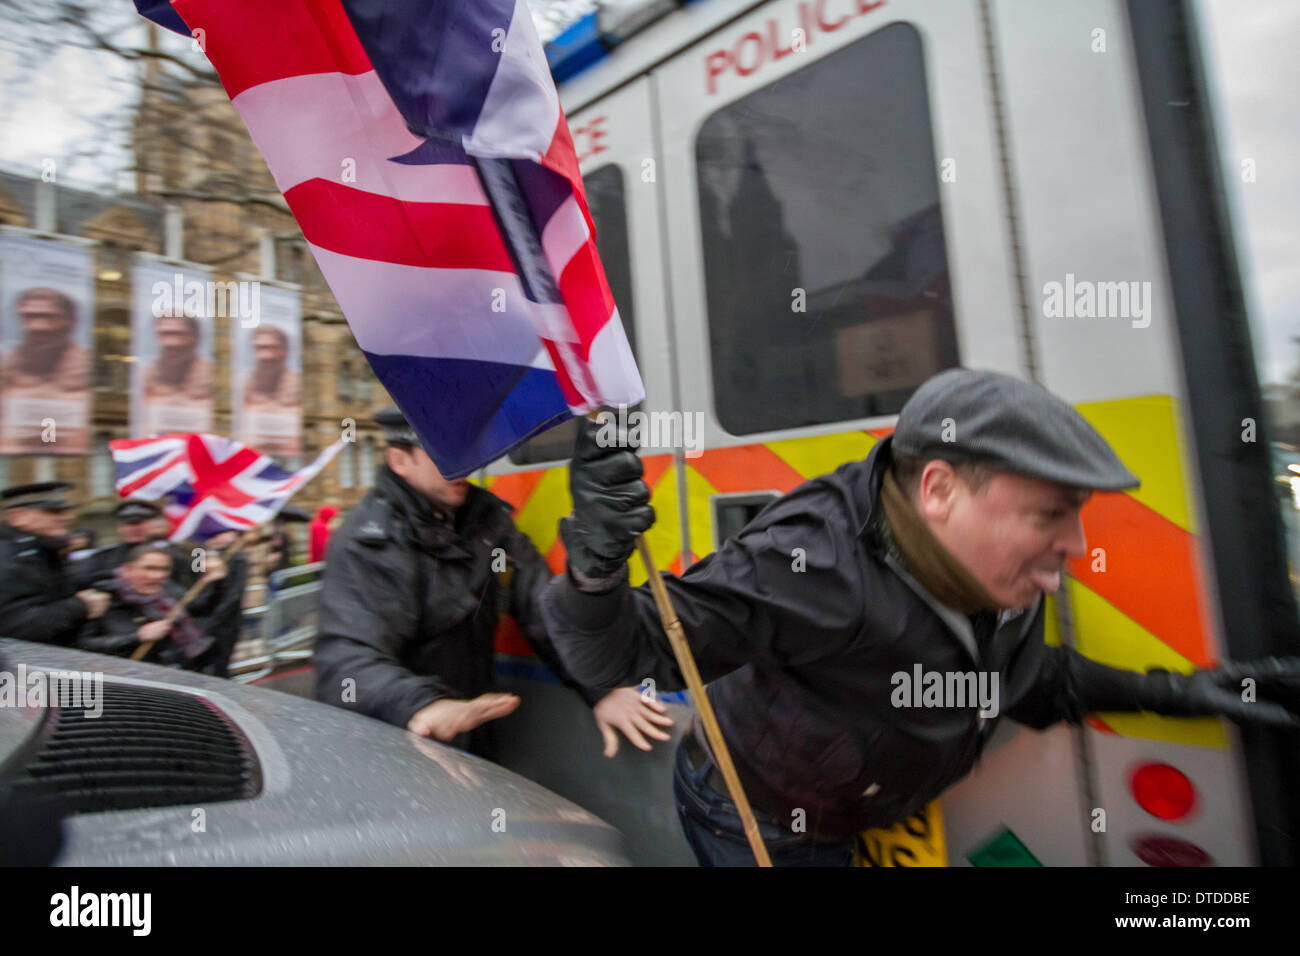 Großbritanniens erste radikale islamistische Counter Protest endet bei Zusammenstößen mit der Polizei in London Stockfoto